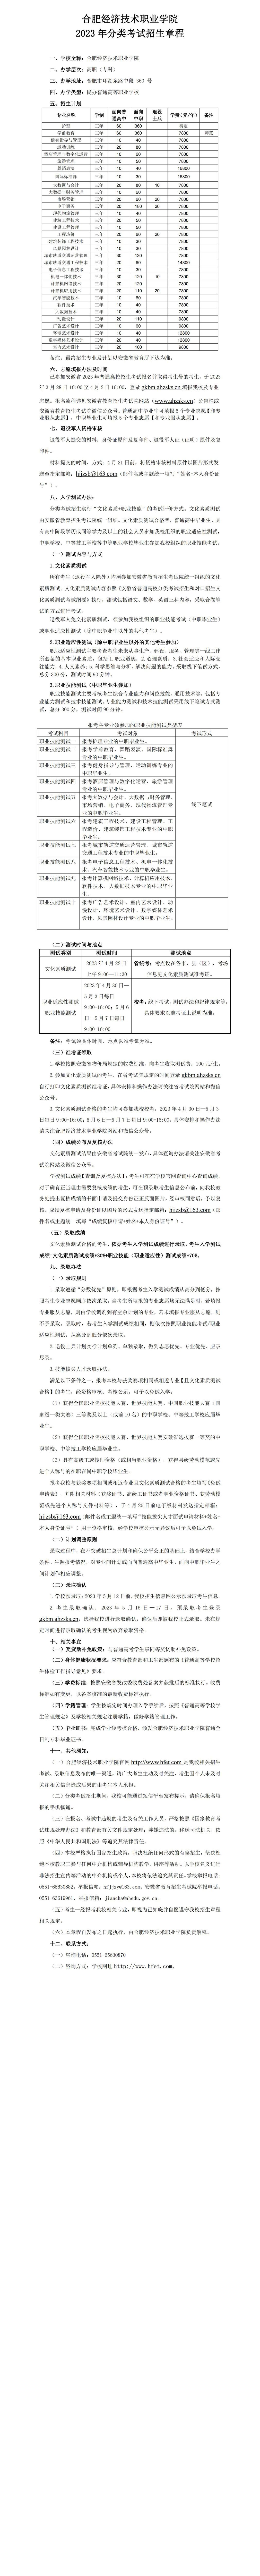 15vip太阳成集团有限公司(中国)2023年分类考试招生章程(6)_00.png